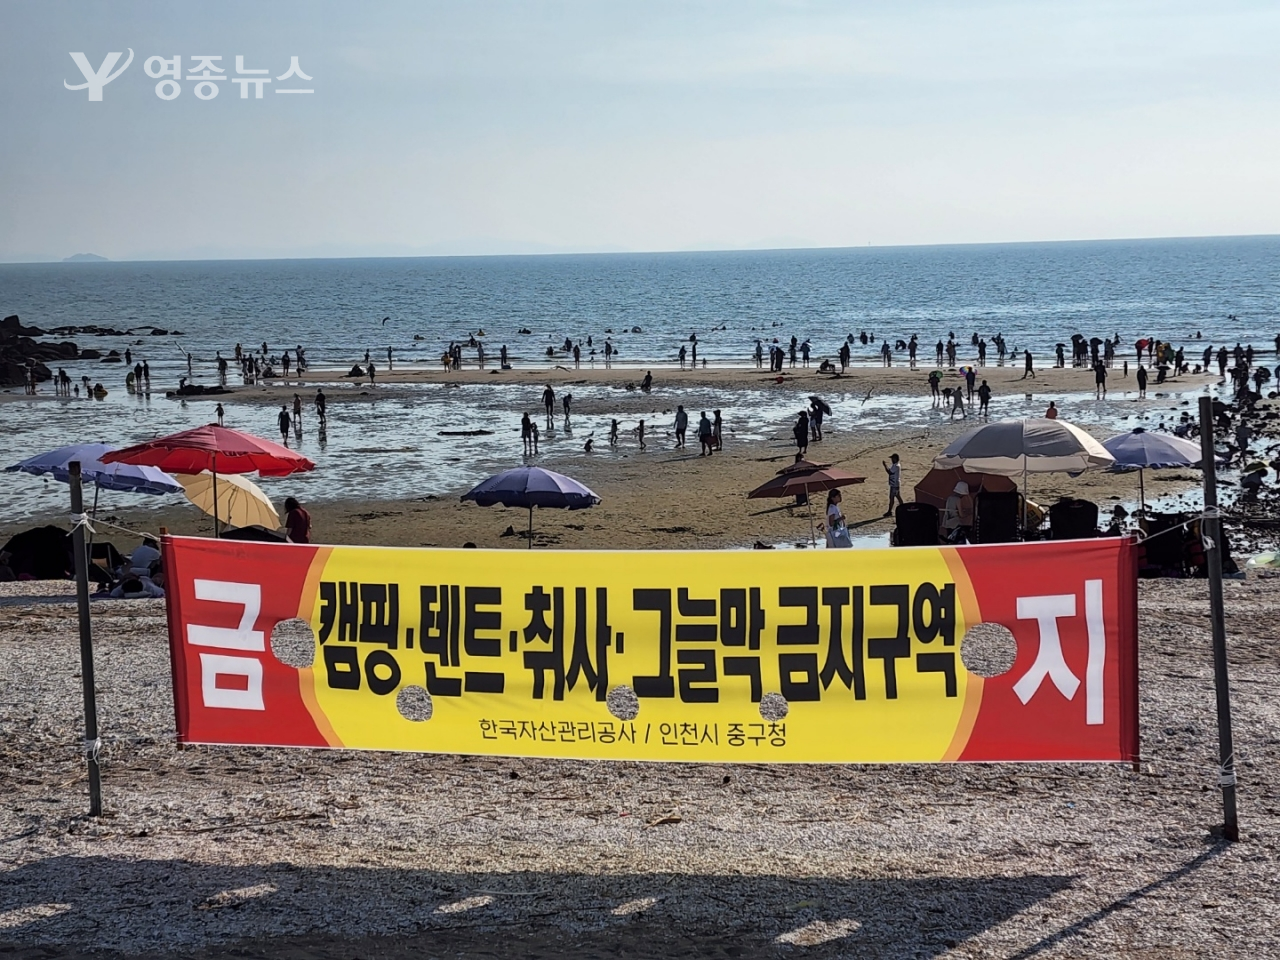 인천 중구 선녀바위 해변, 해안 침식 …안전사고 발생 가능성 농후, 관리하는 한국자산관리공사 무관심